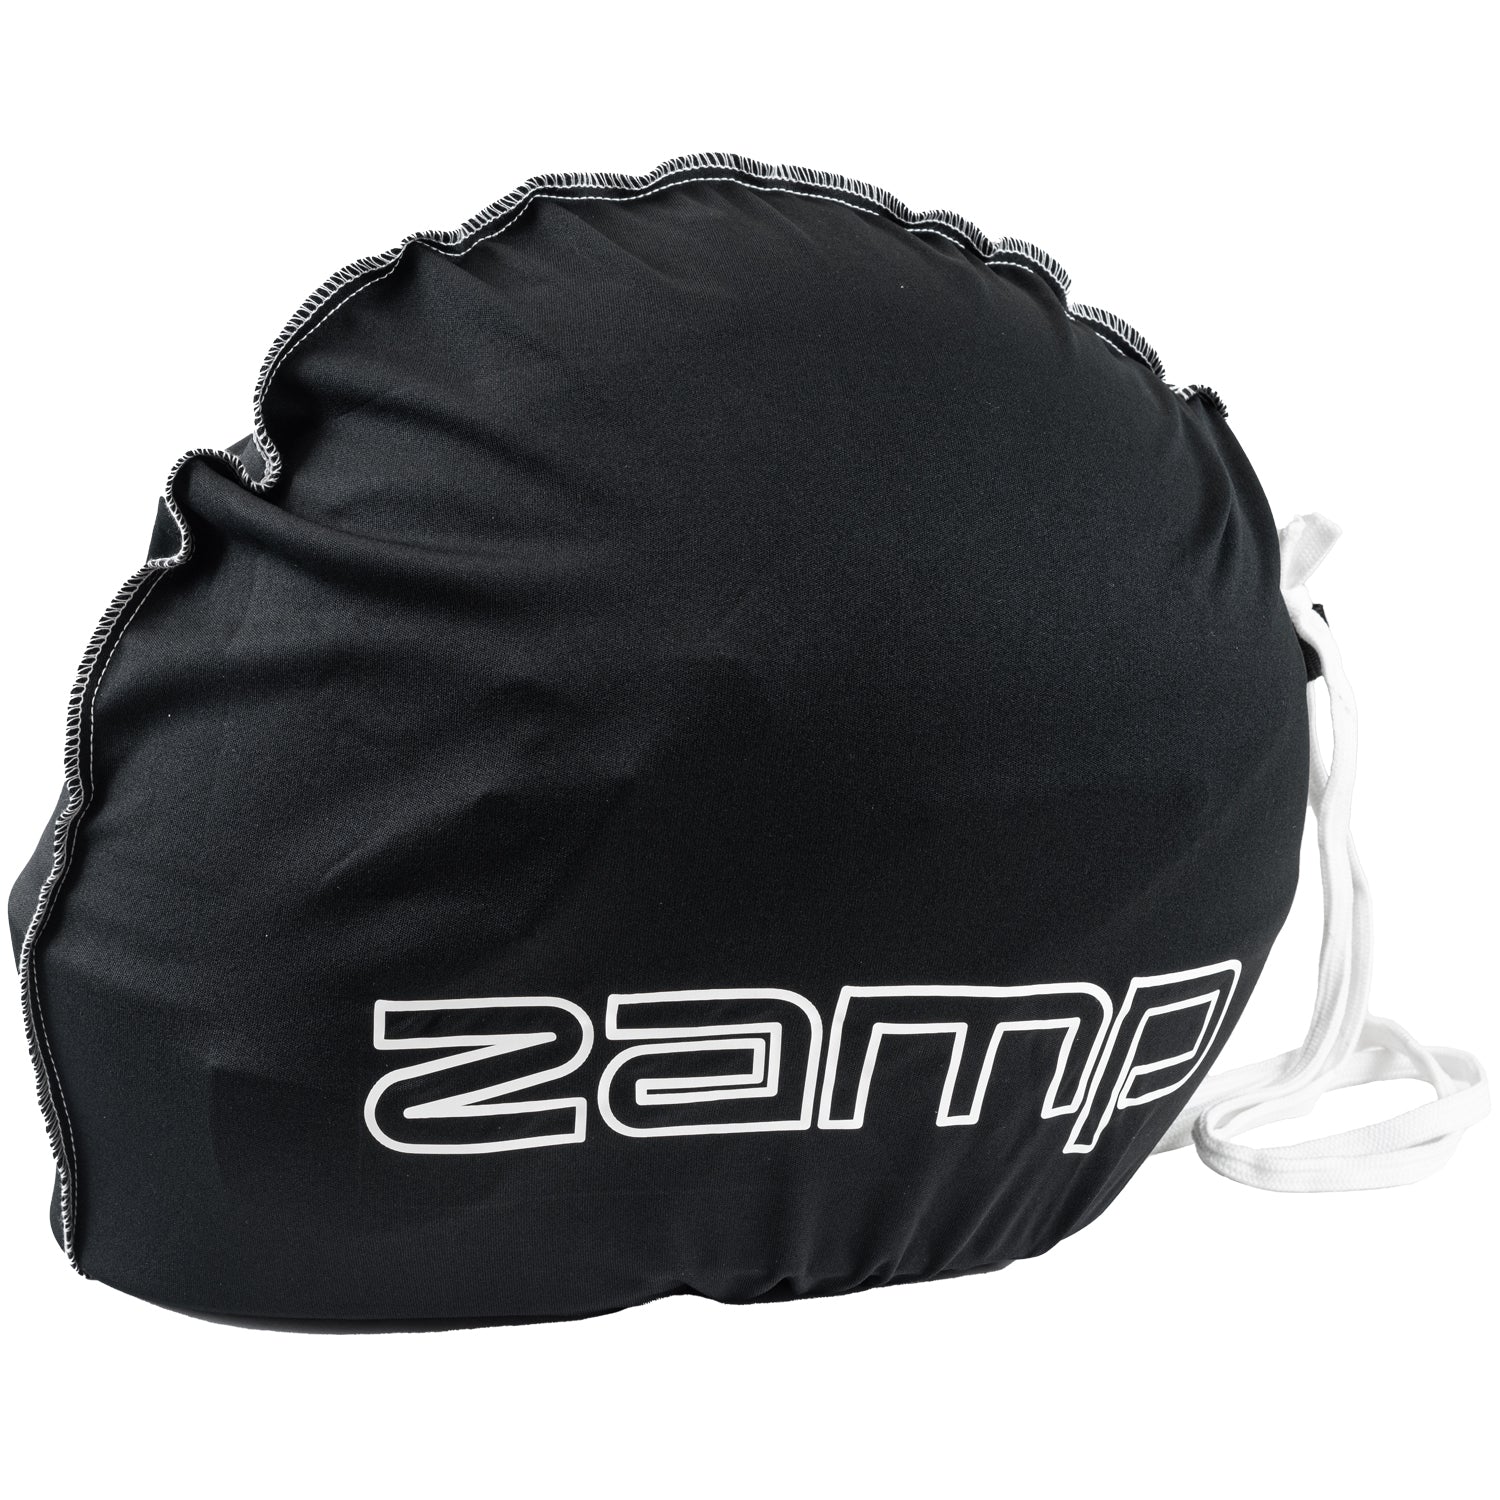 Zamp Black Nylon Helmet Bag